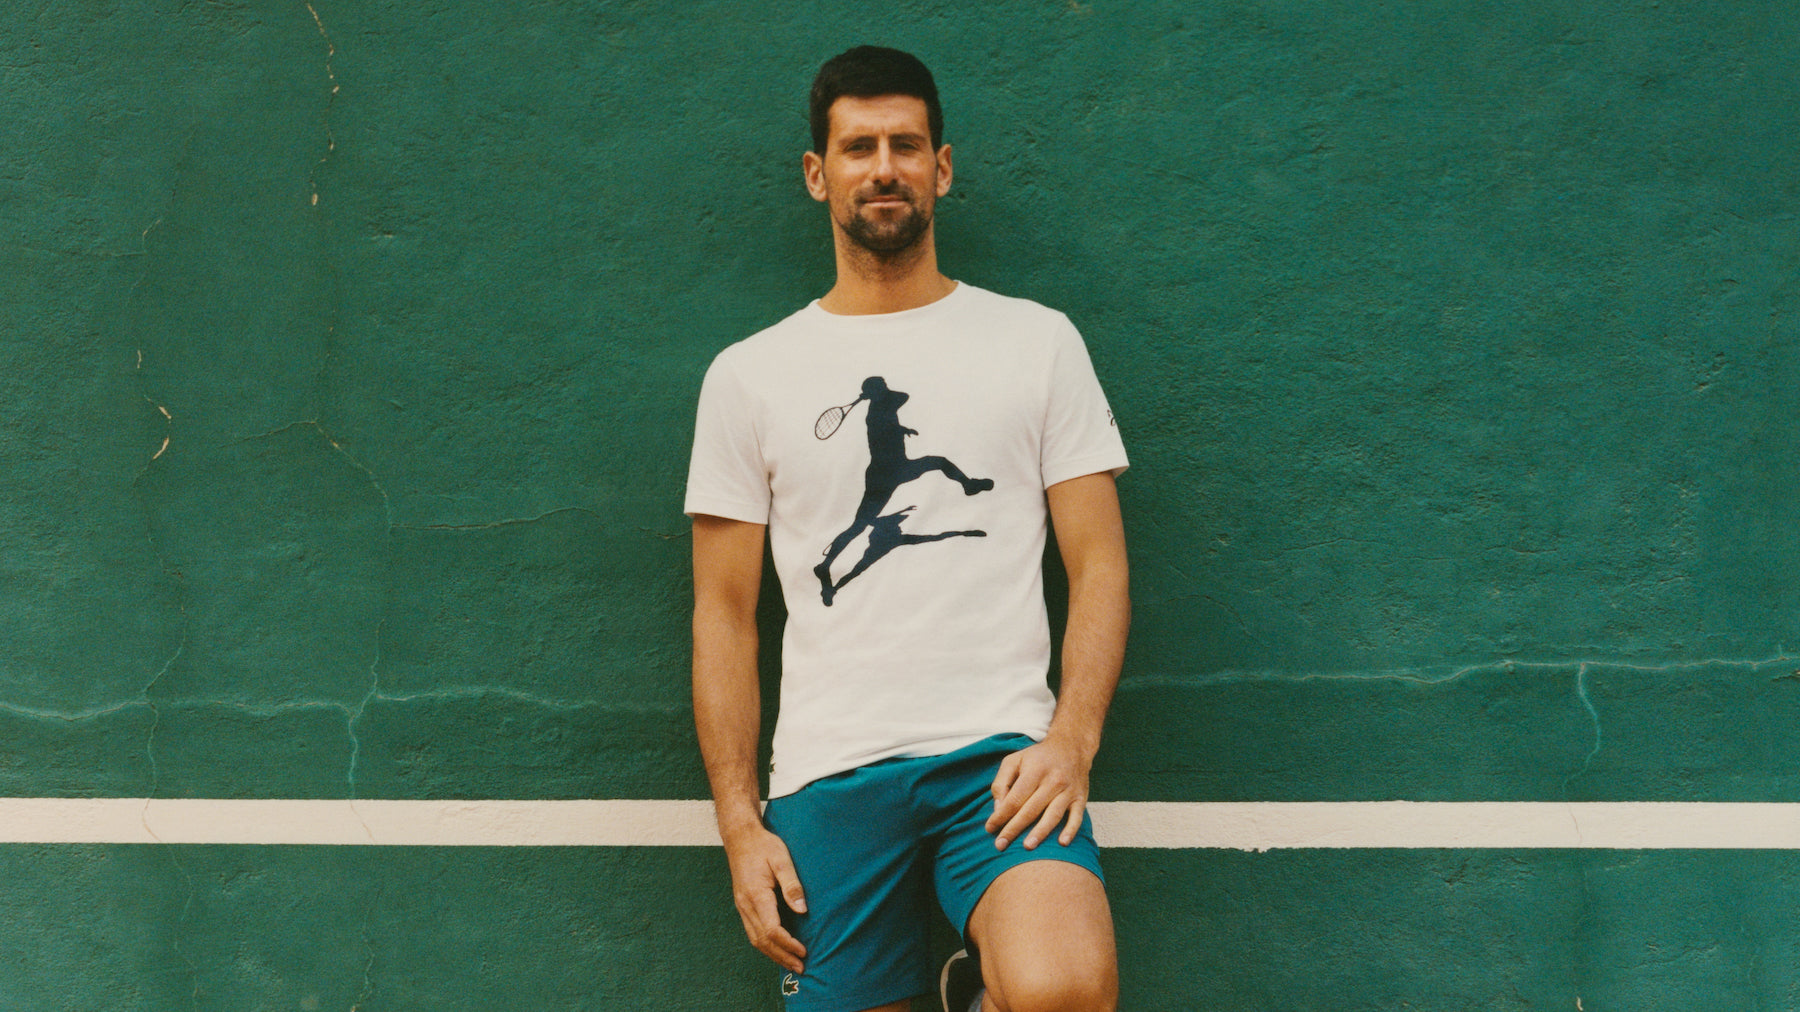 Novak Djokovic's comeback